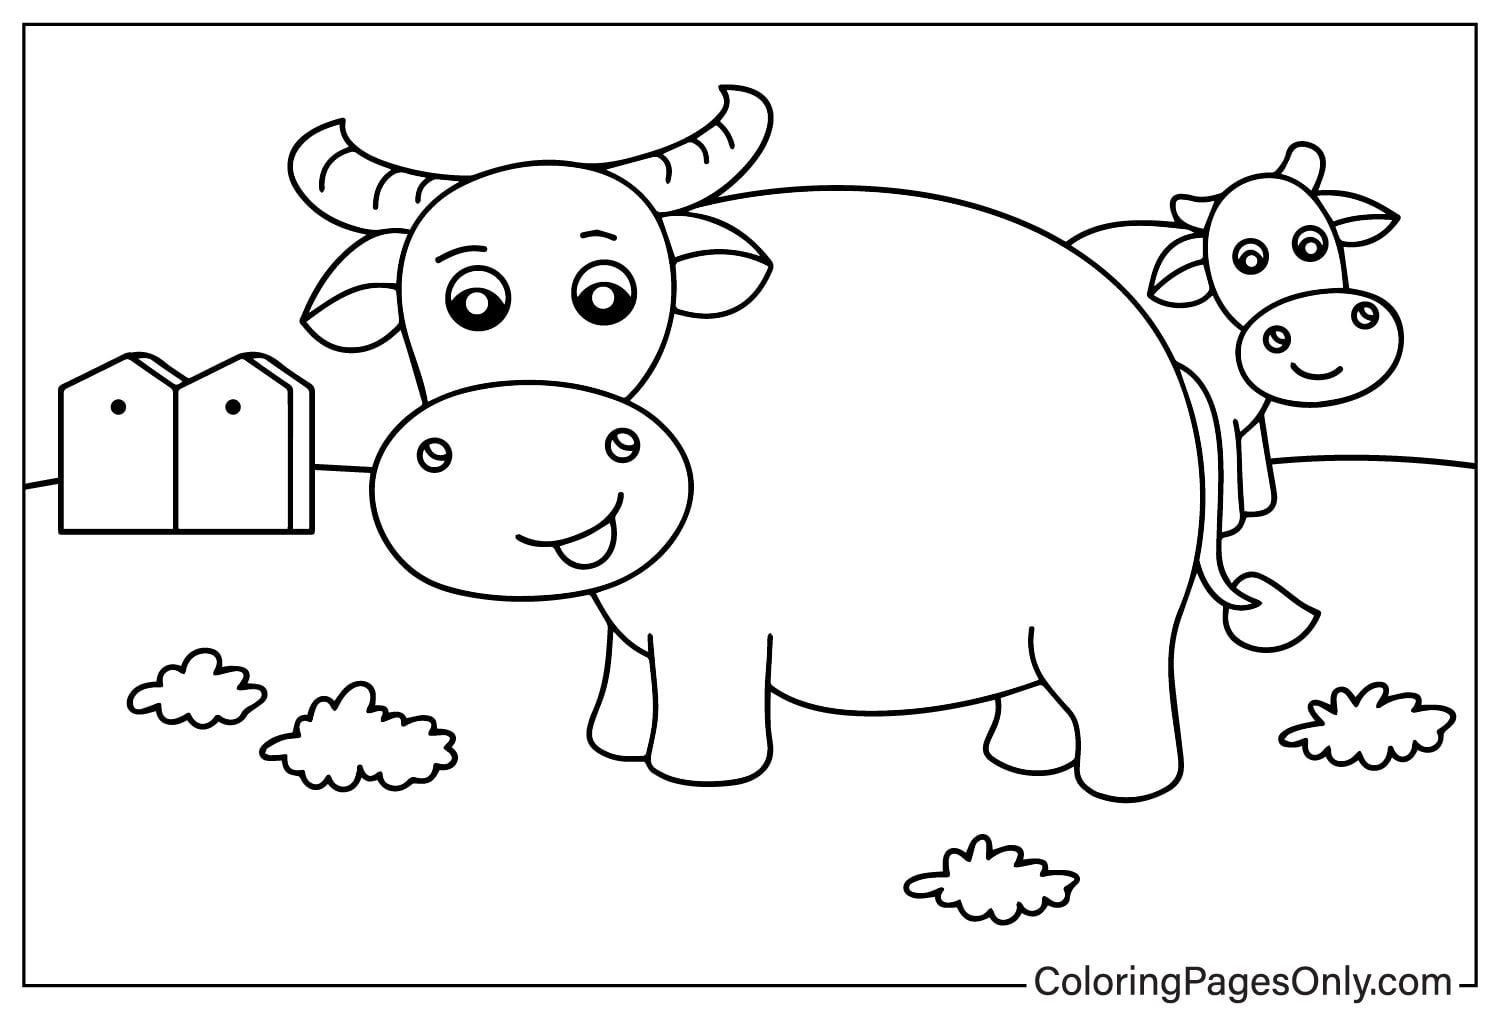 Búfalos en la granja de Farm Animal